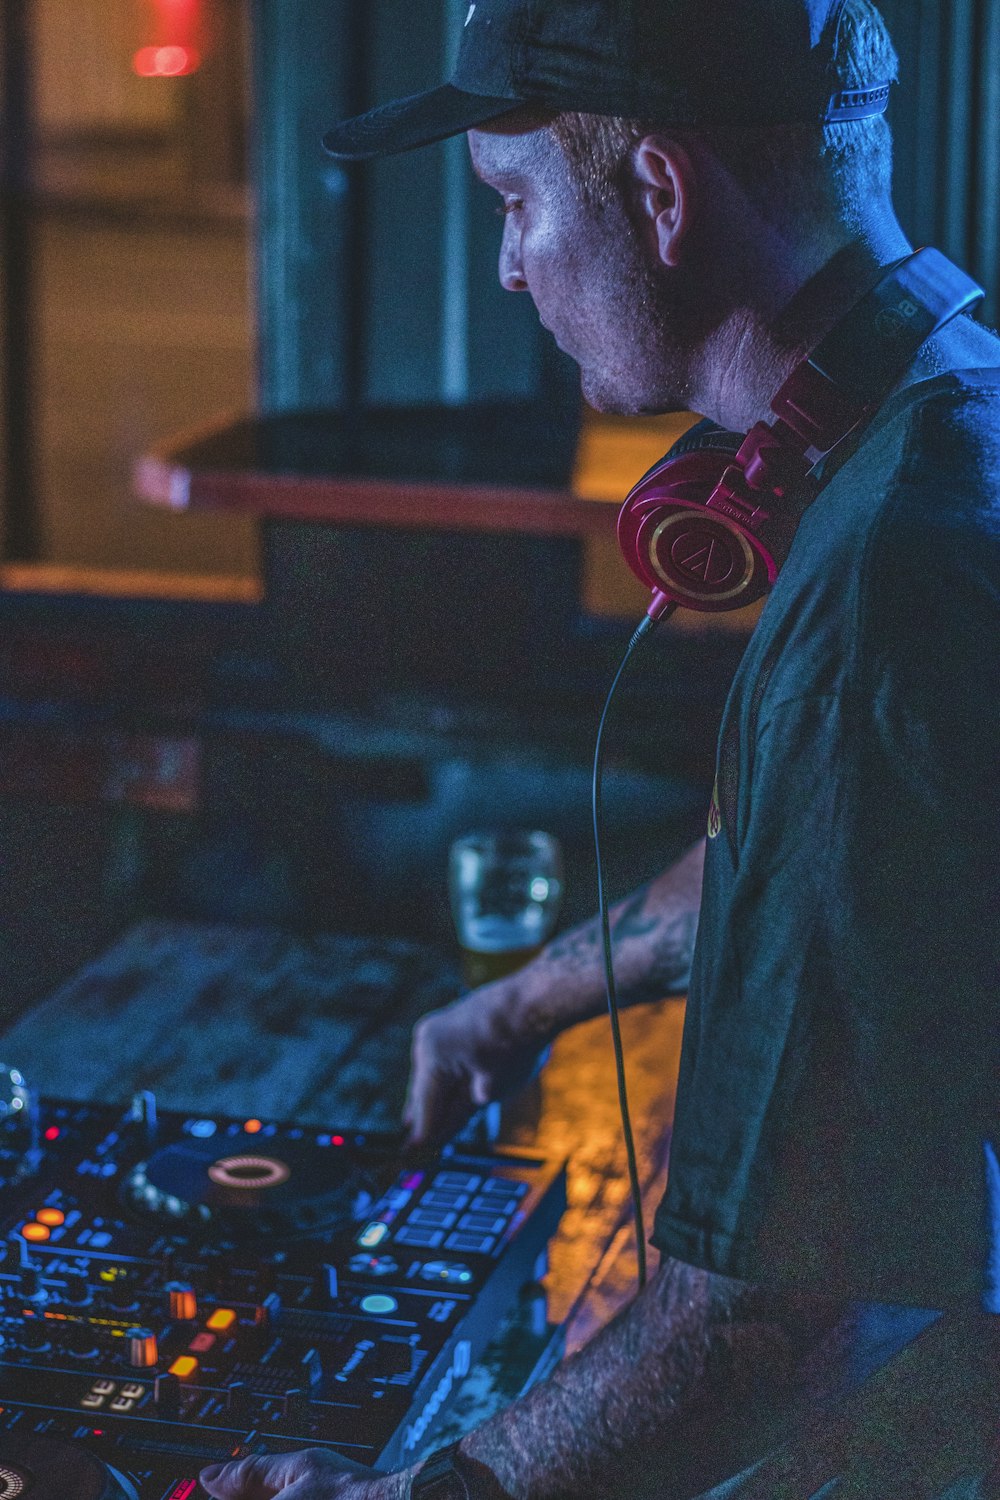 Mann im blauen Hemd mit schwarzen Kopfhörern spielt DJ-Controller